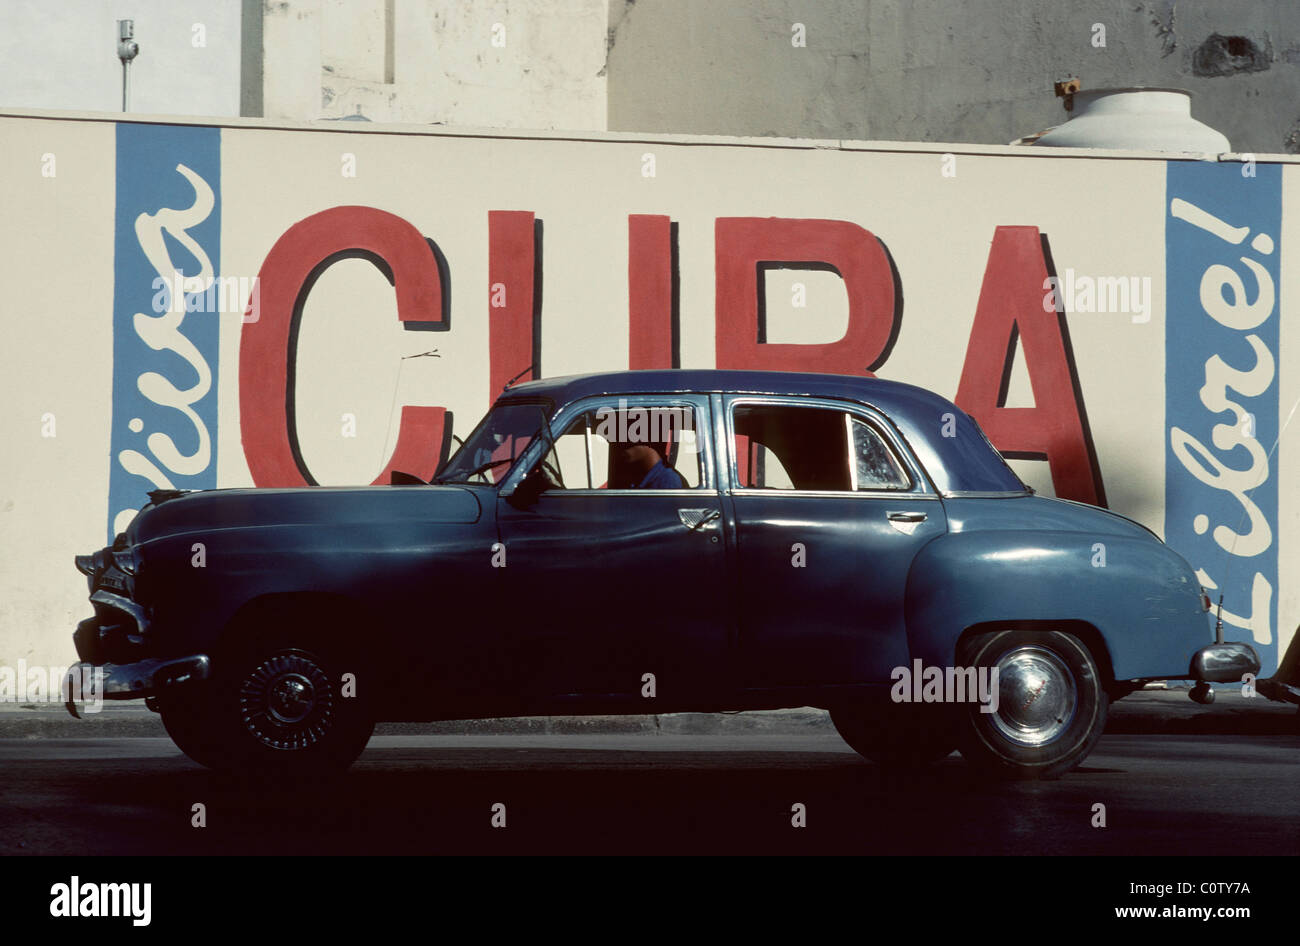 L'Avana. Cuba. Vintage americano auto di fronte patriottico slogan "Viva Cuba Libre' a l'Avana Vecchia. Foto Stock